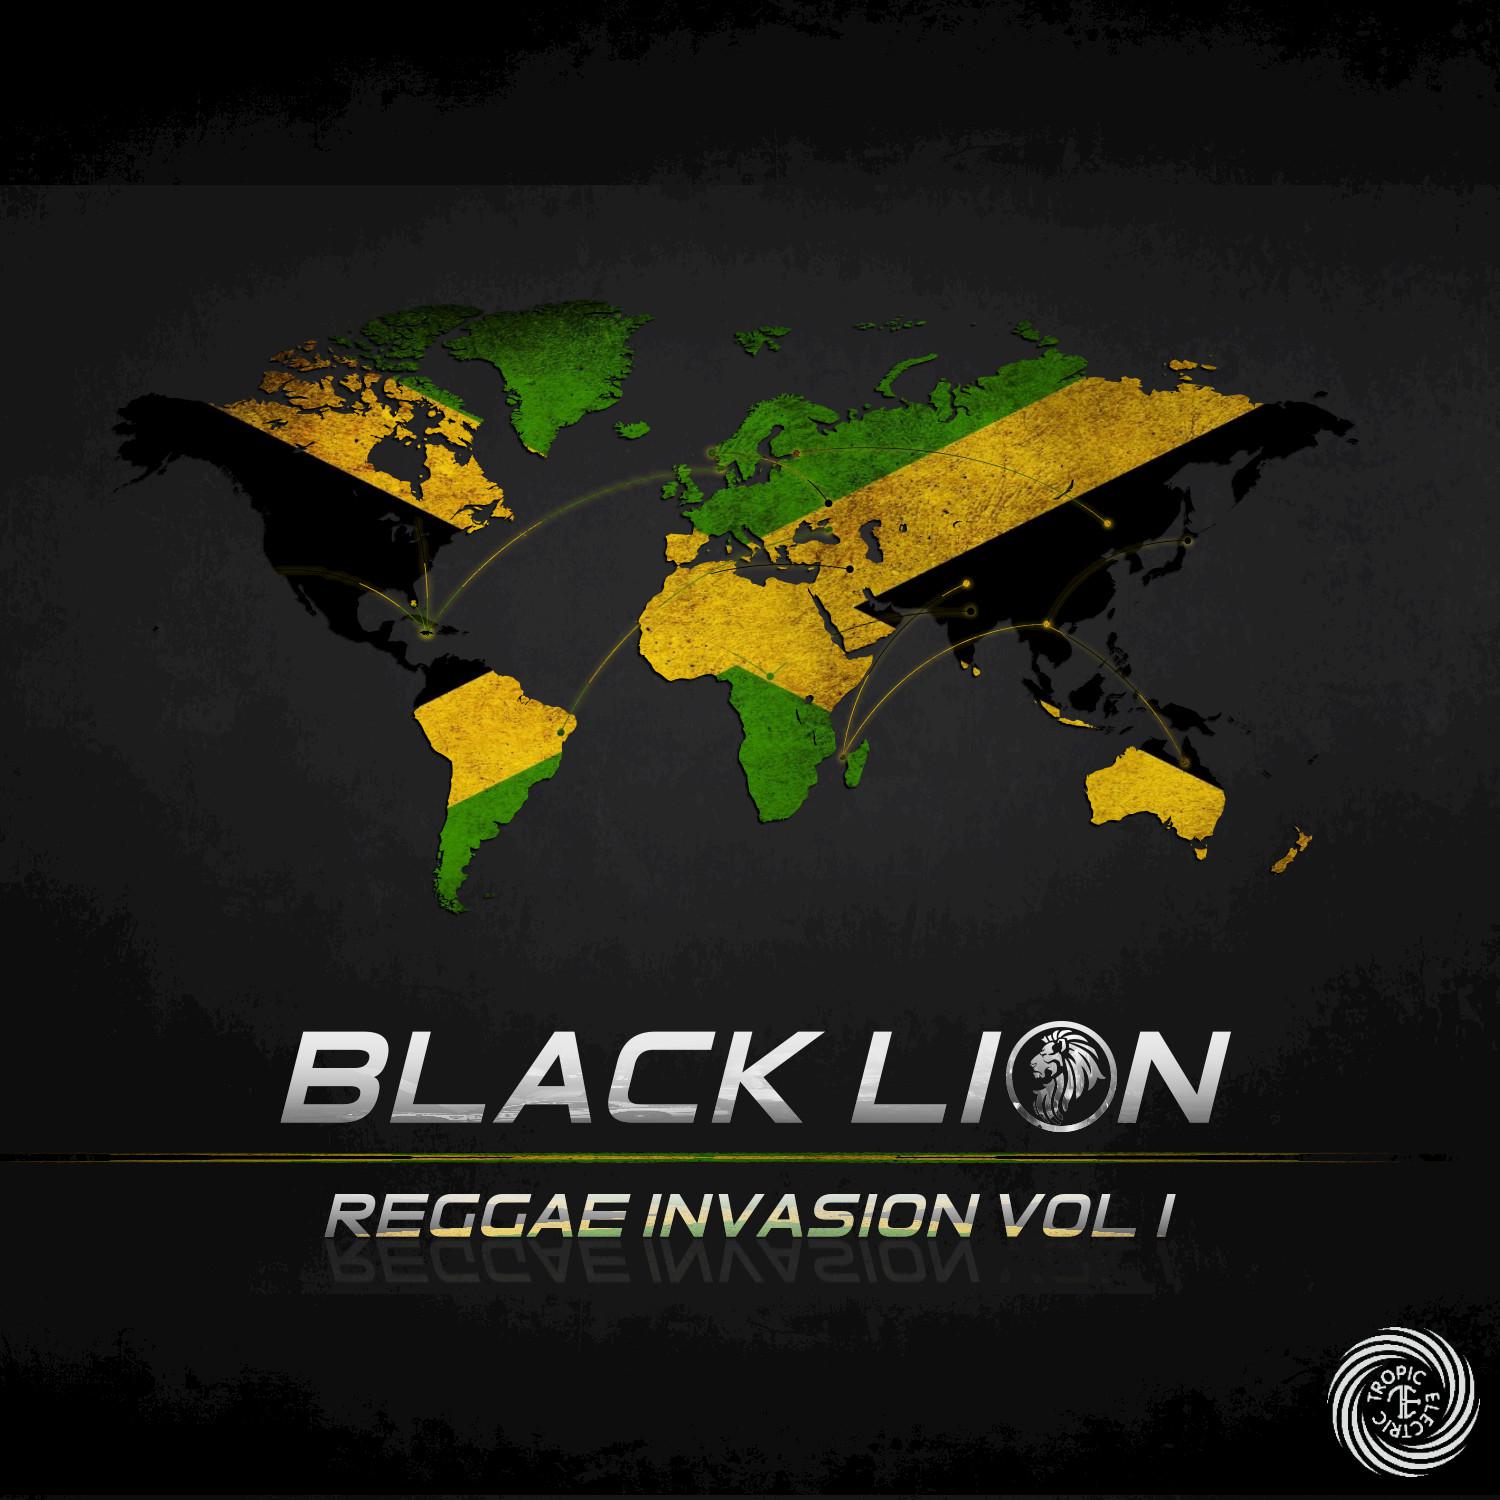 Black Lion Reggae Invasion Vol. 1